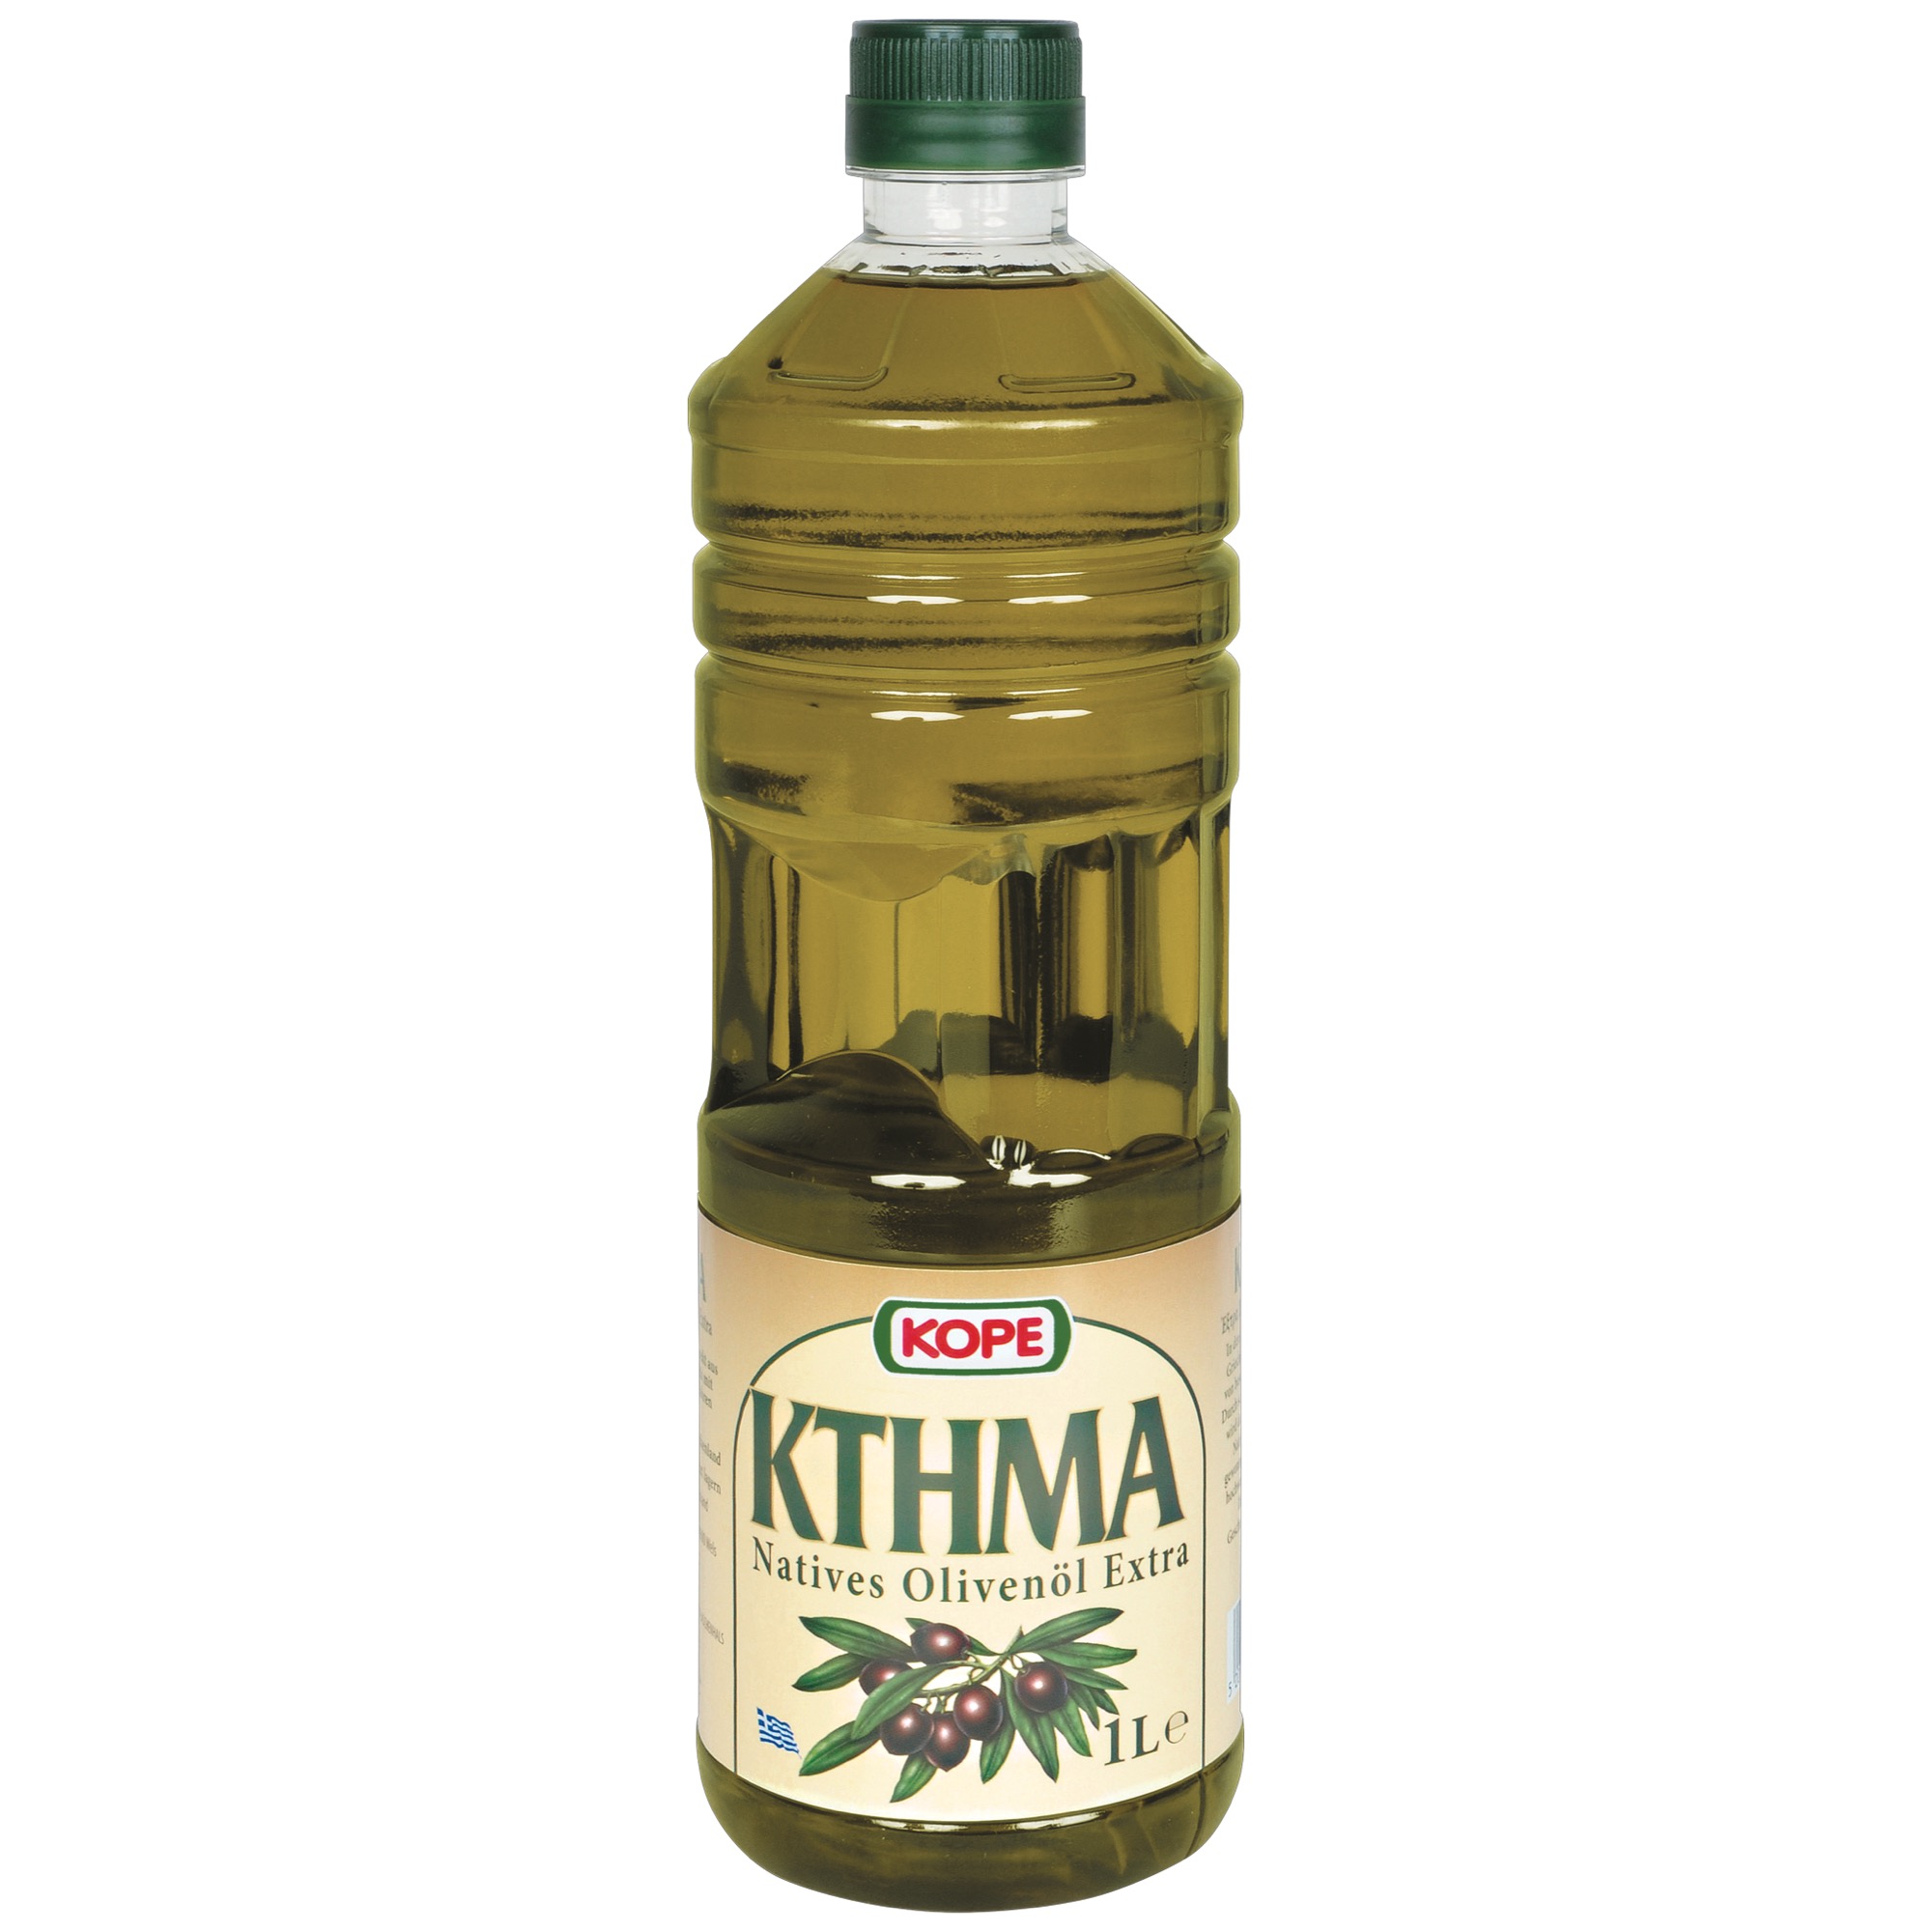 Kope grécky oliv.olej extra vergine 1L